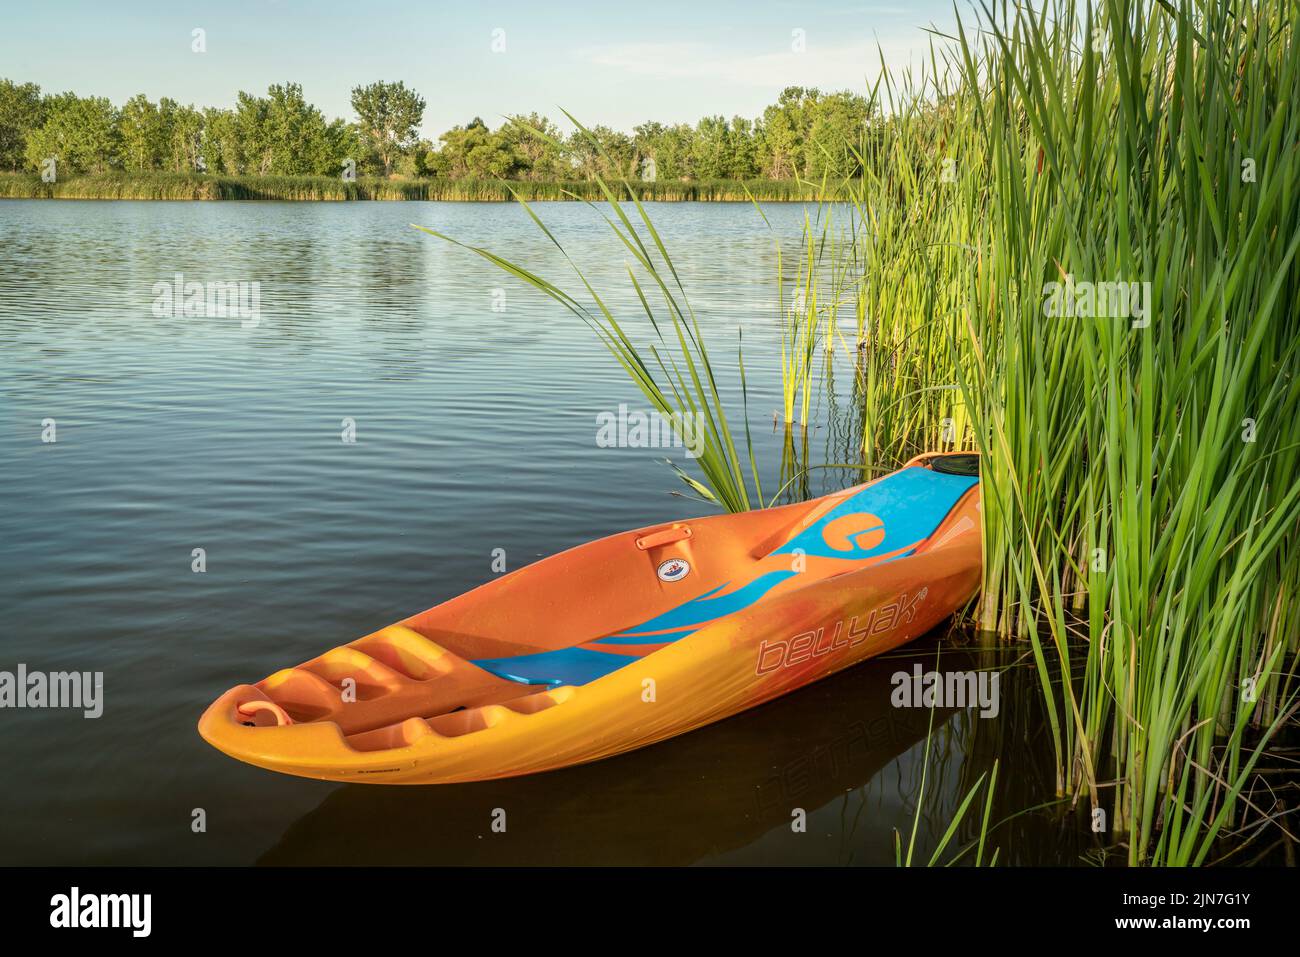 Fort Collins, CO, EE.UU. - 11 de julio de 2022: Bellyak, kayak propenso, en caña a orillas del lago en Colorado, recreación acuática que combina los mejores aspectos de k Foto de stock